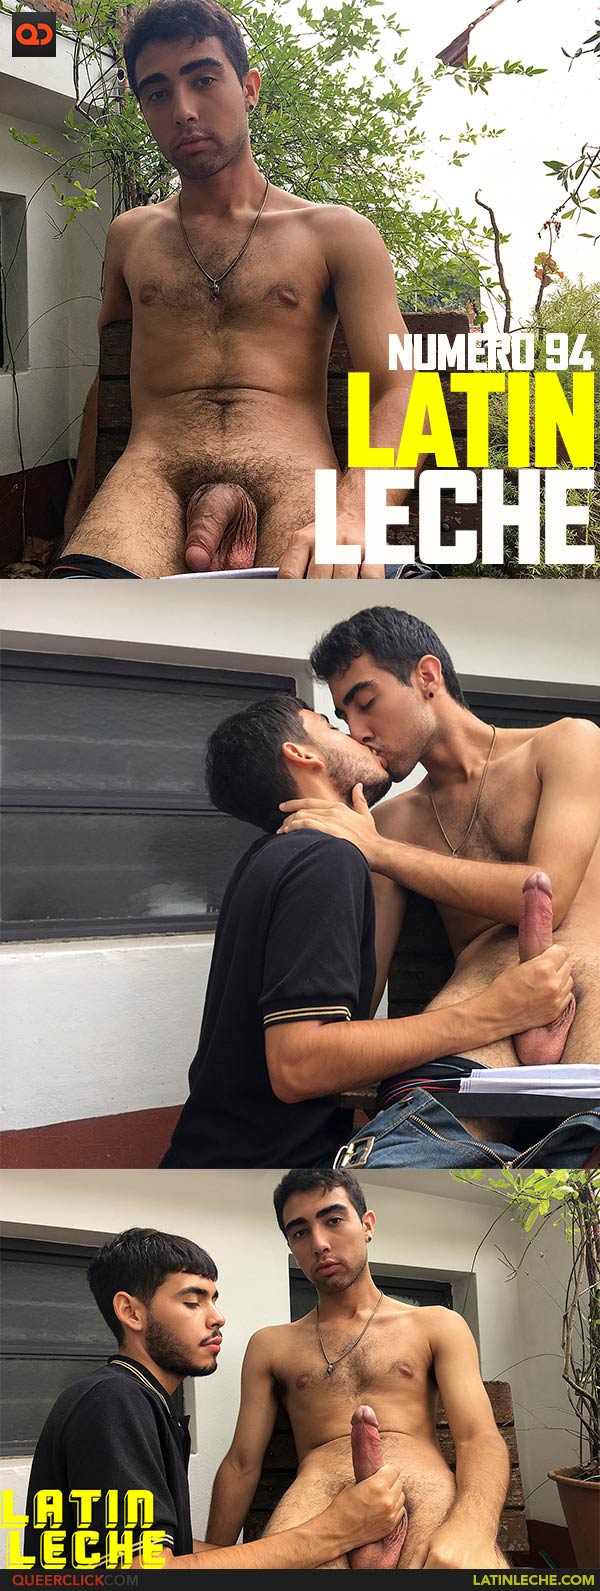 Latin Leche: Numero 94